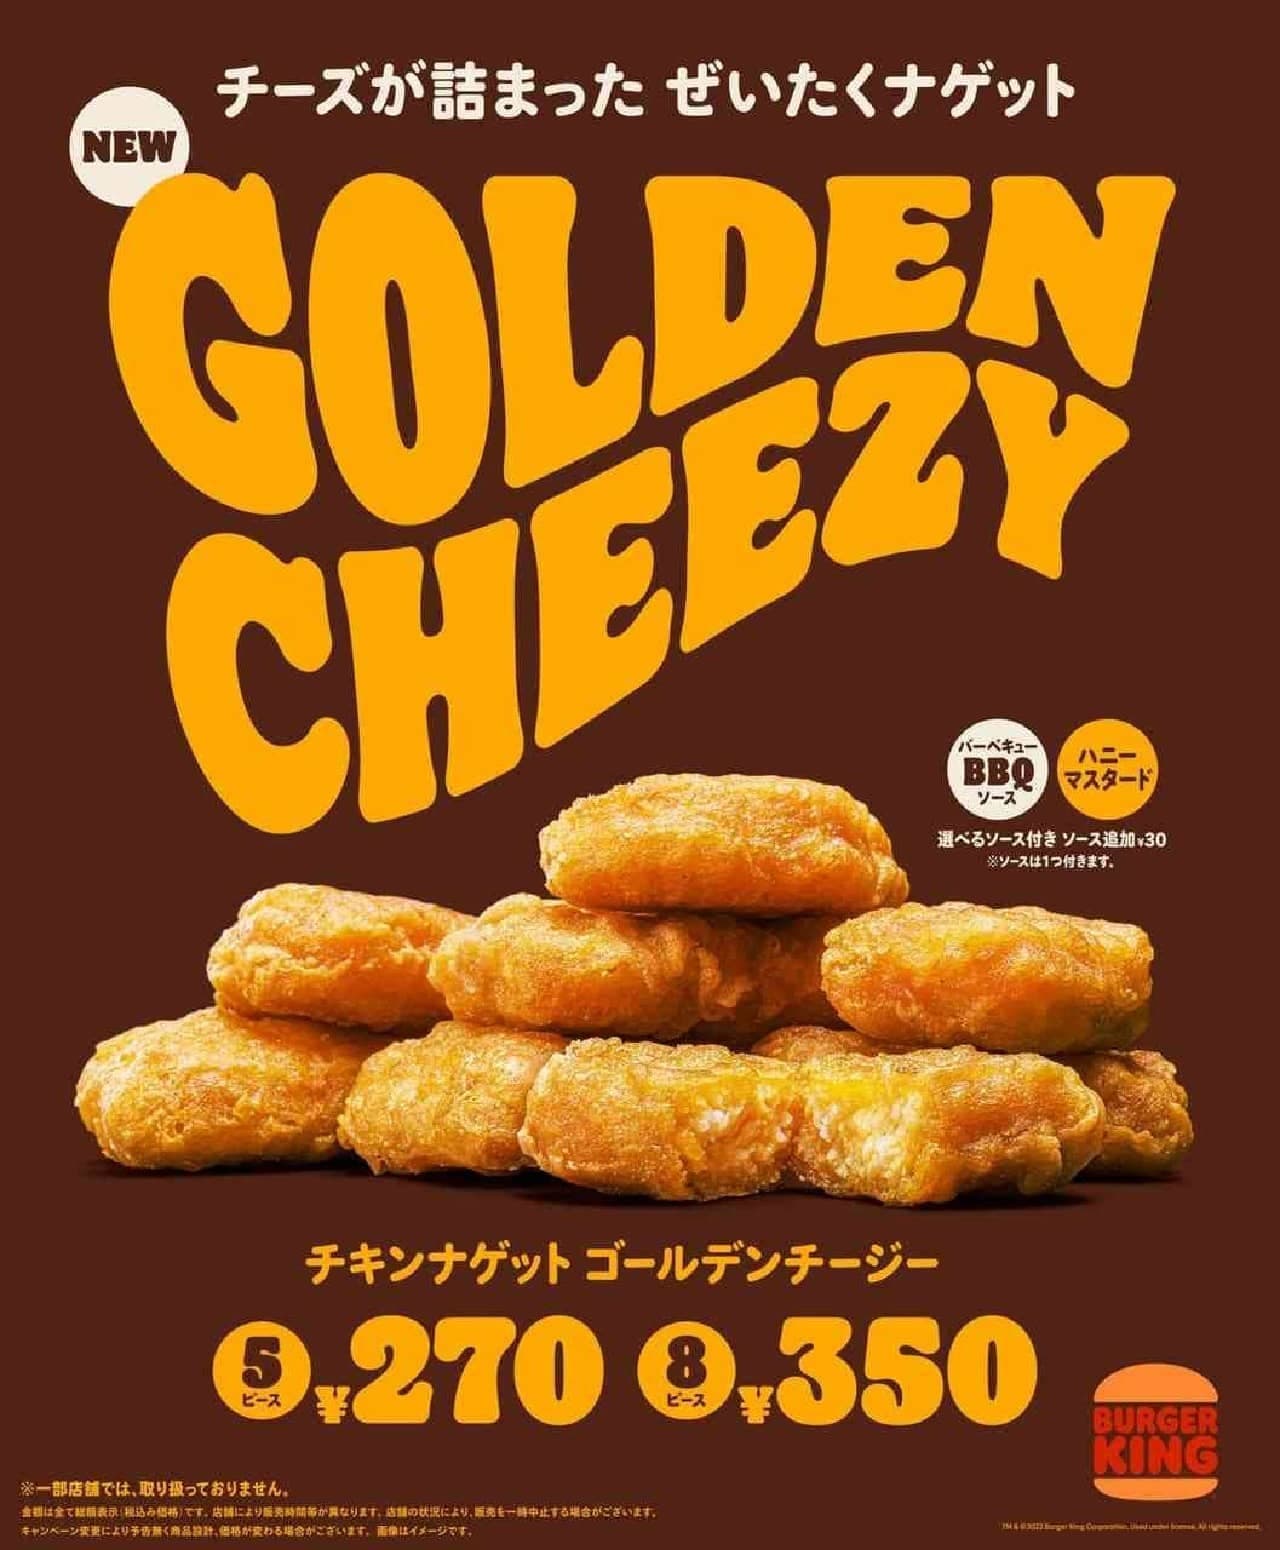 Burger King "Chicken Nugget Golden Cheezy